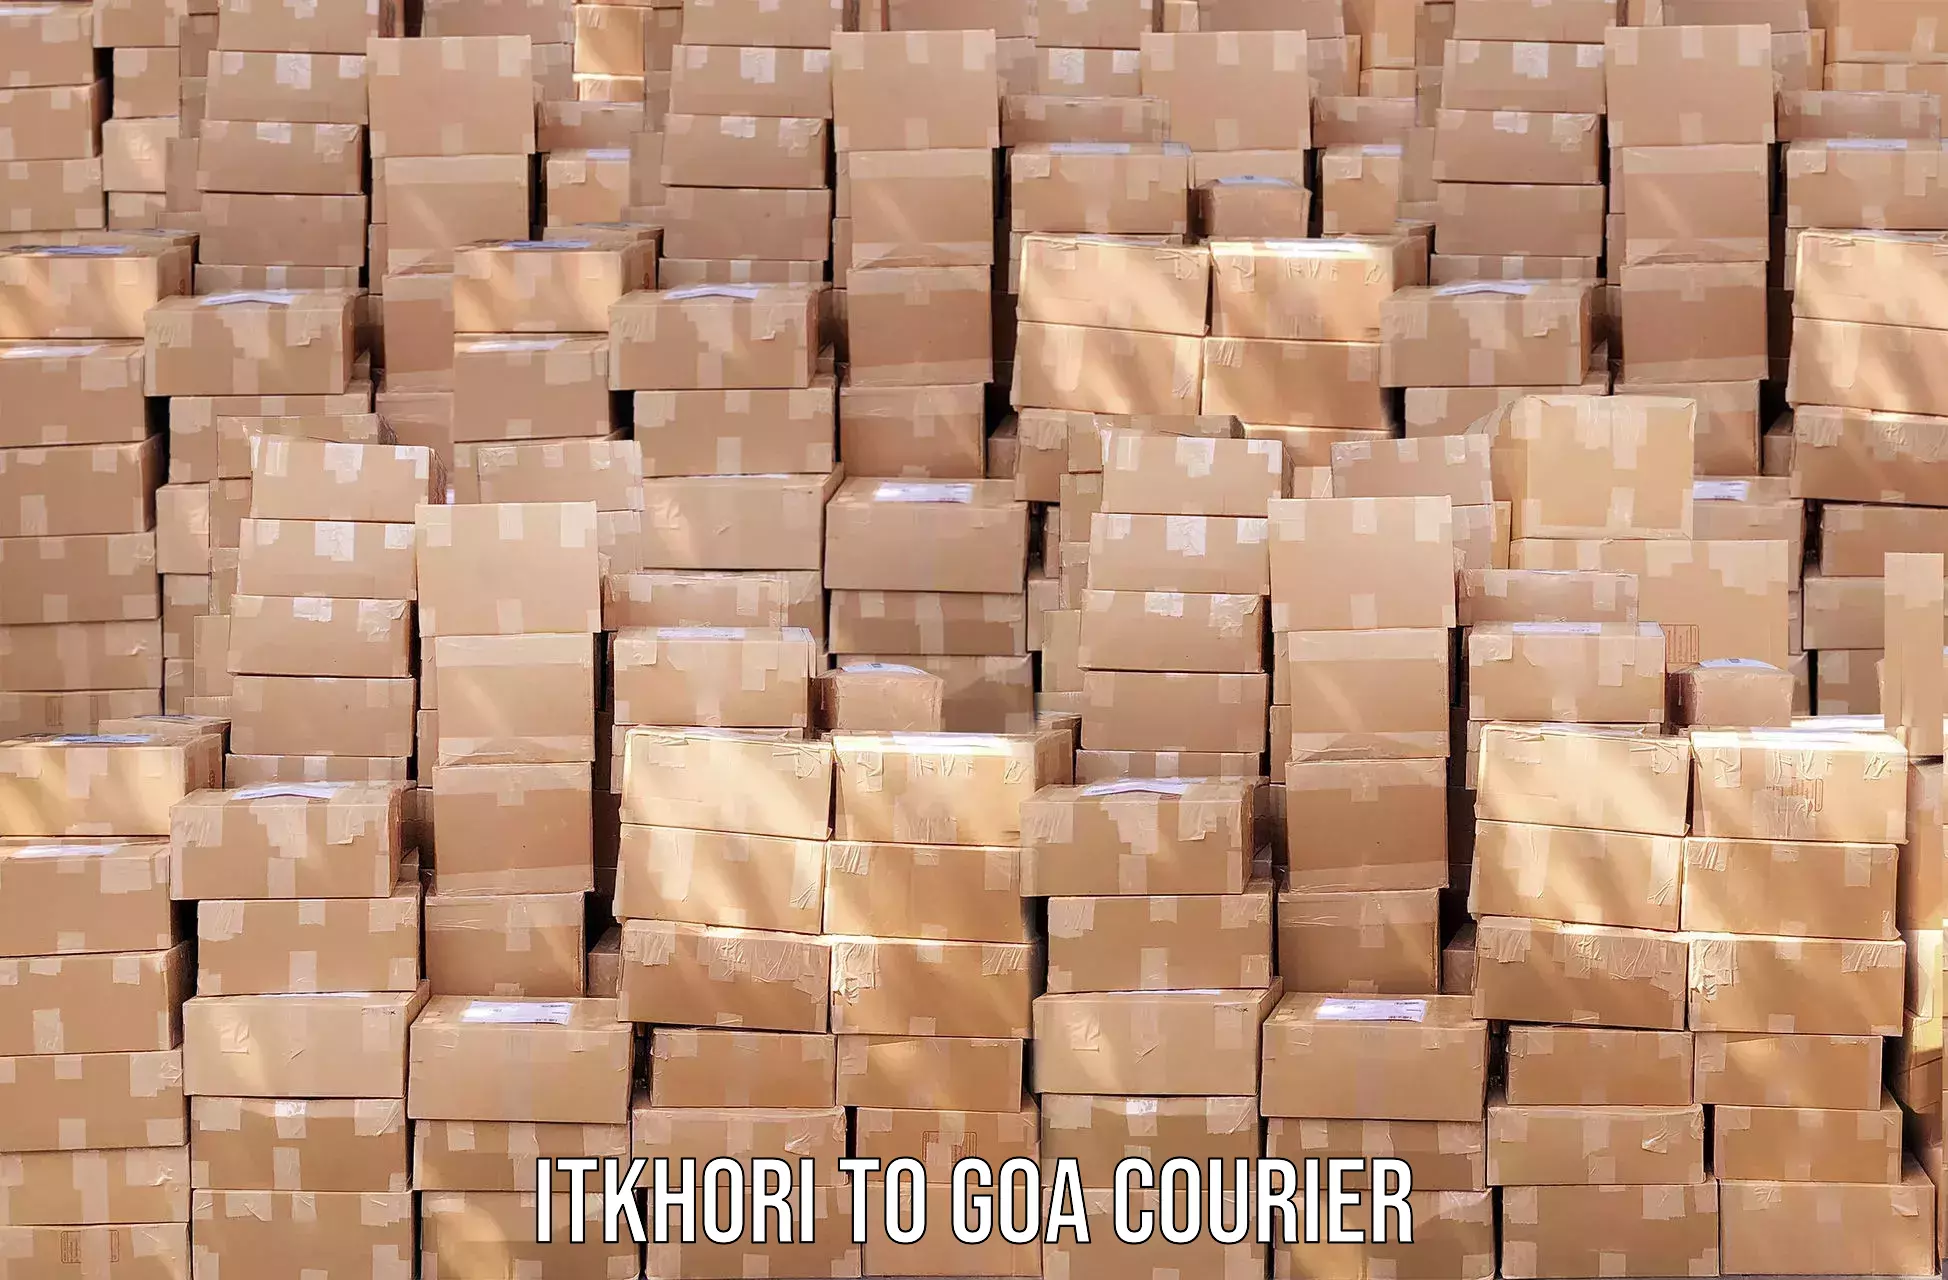 Efficient logistics management Itkhori to Goa